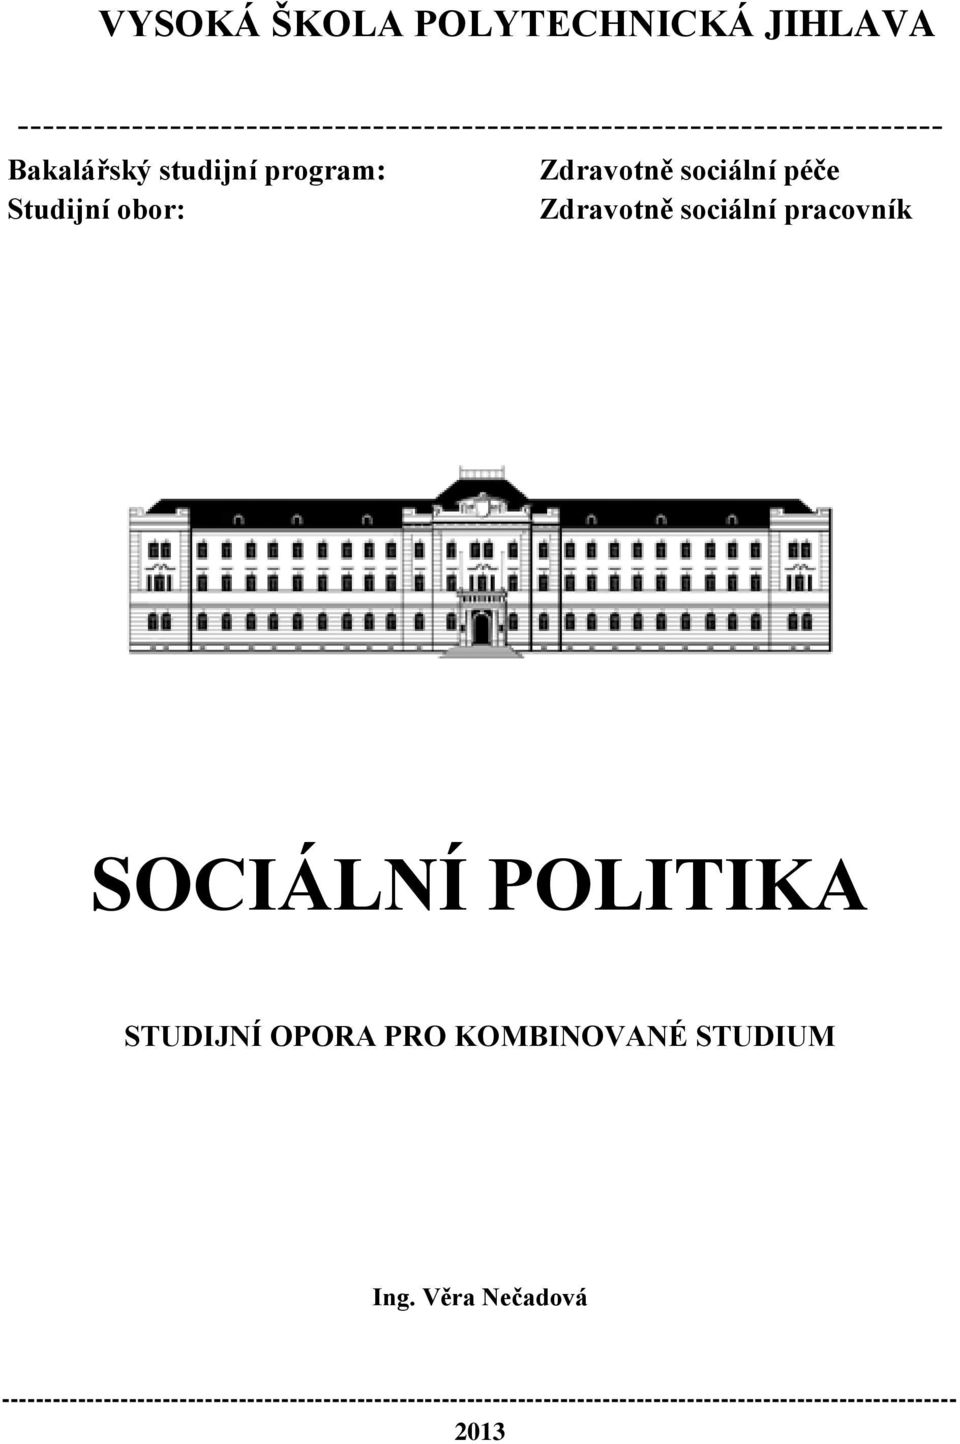 program: Zdravotně sociální péče Studijní obor: Zdravotně sociální pracovník SOCIÁLNÍ POLITIKA